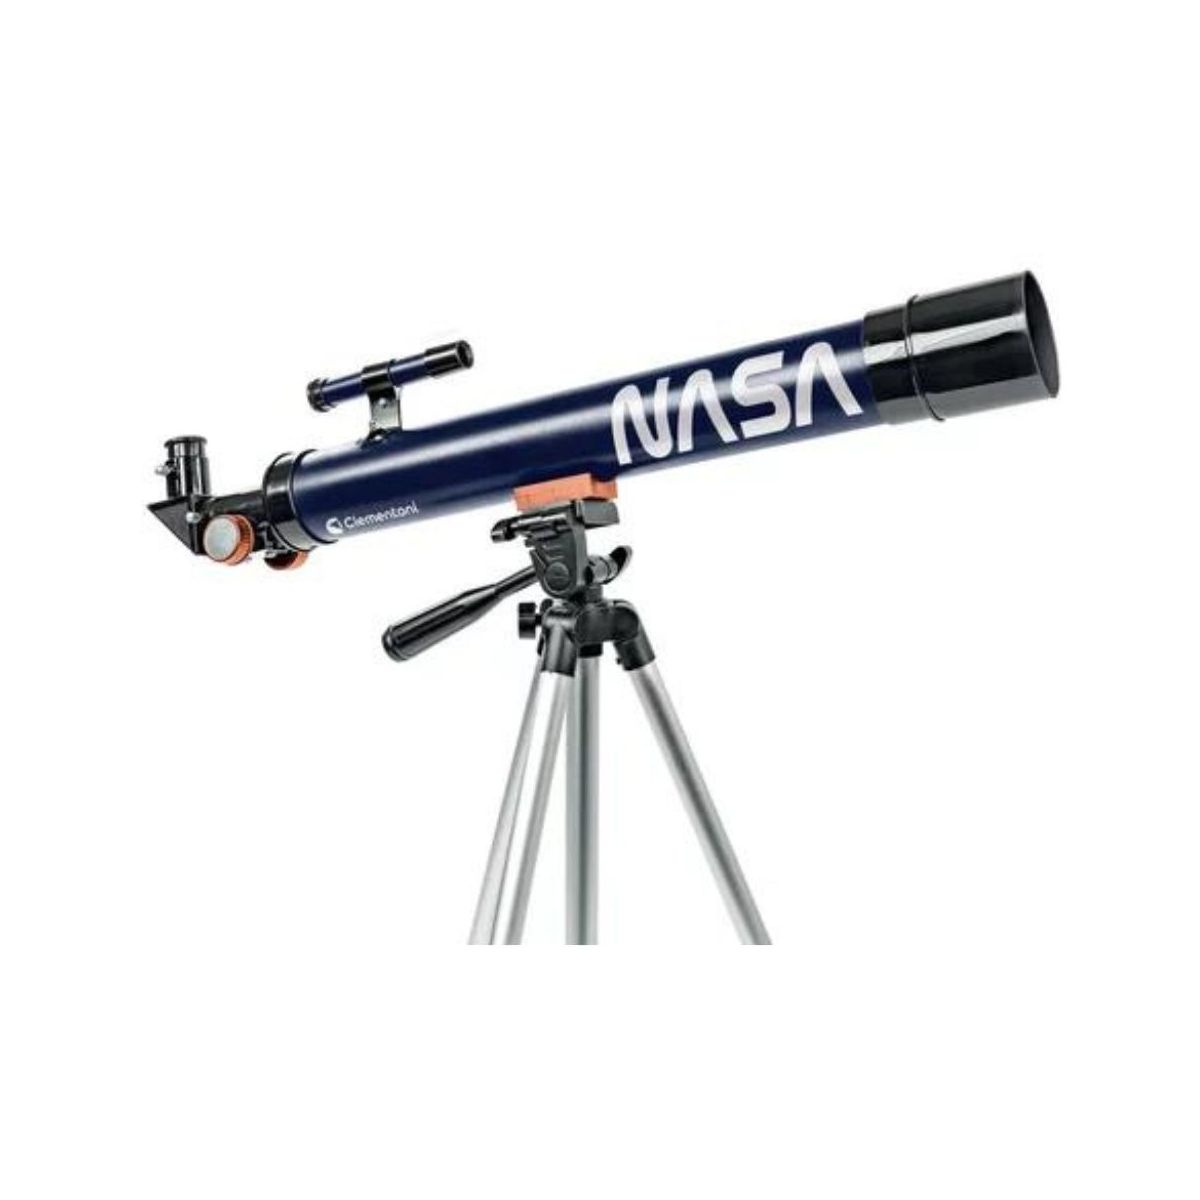 Telescope Enfant : Choisir le meilleur instrument pour l'observation